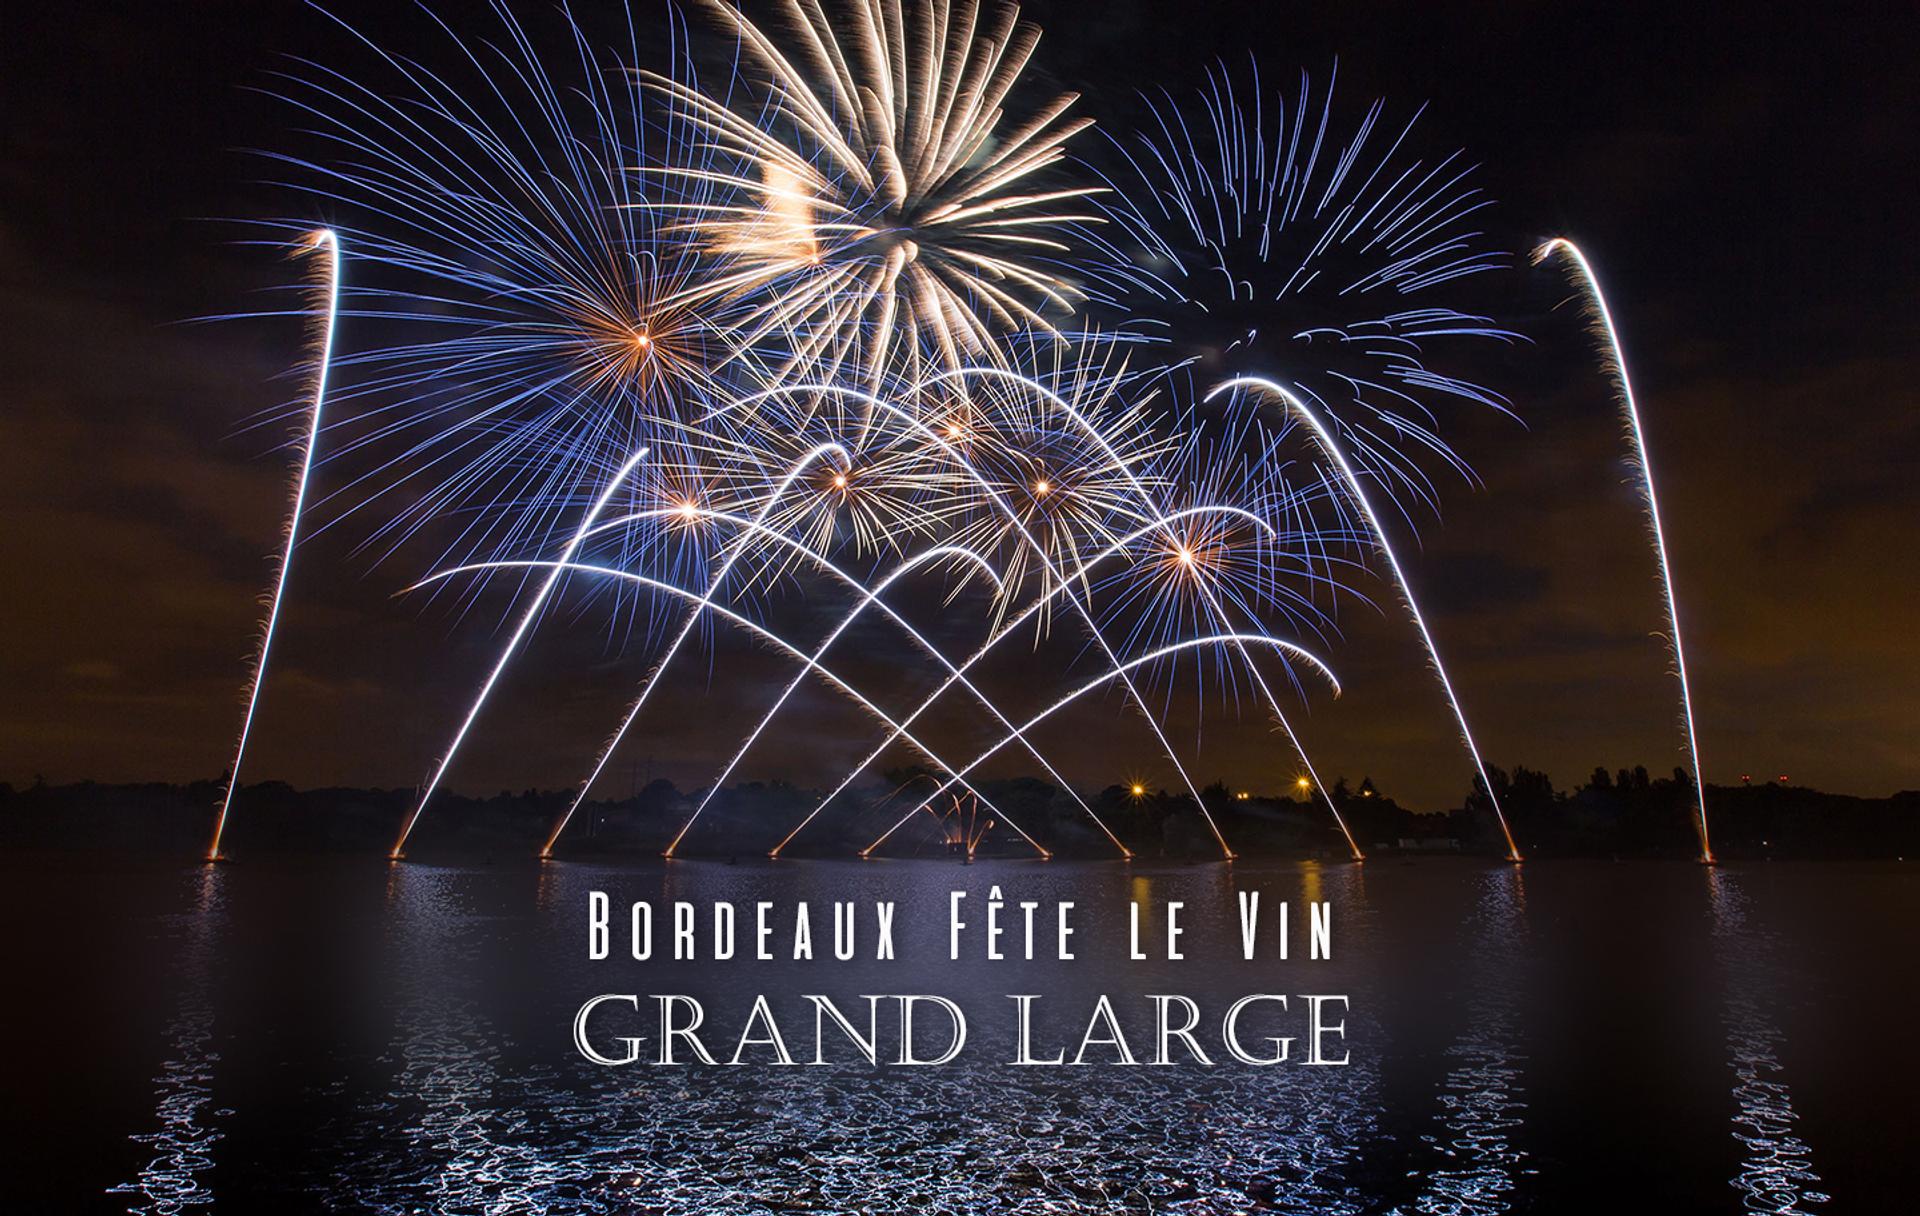 Bordeaux Fête le Vin 2018 : Grand Large